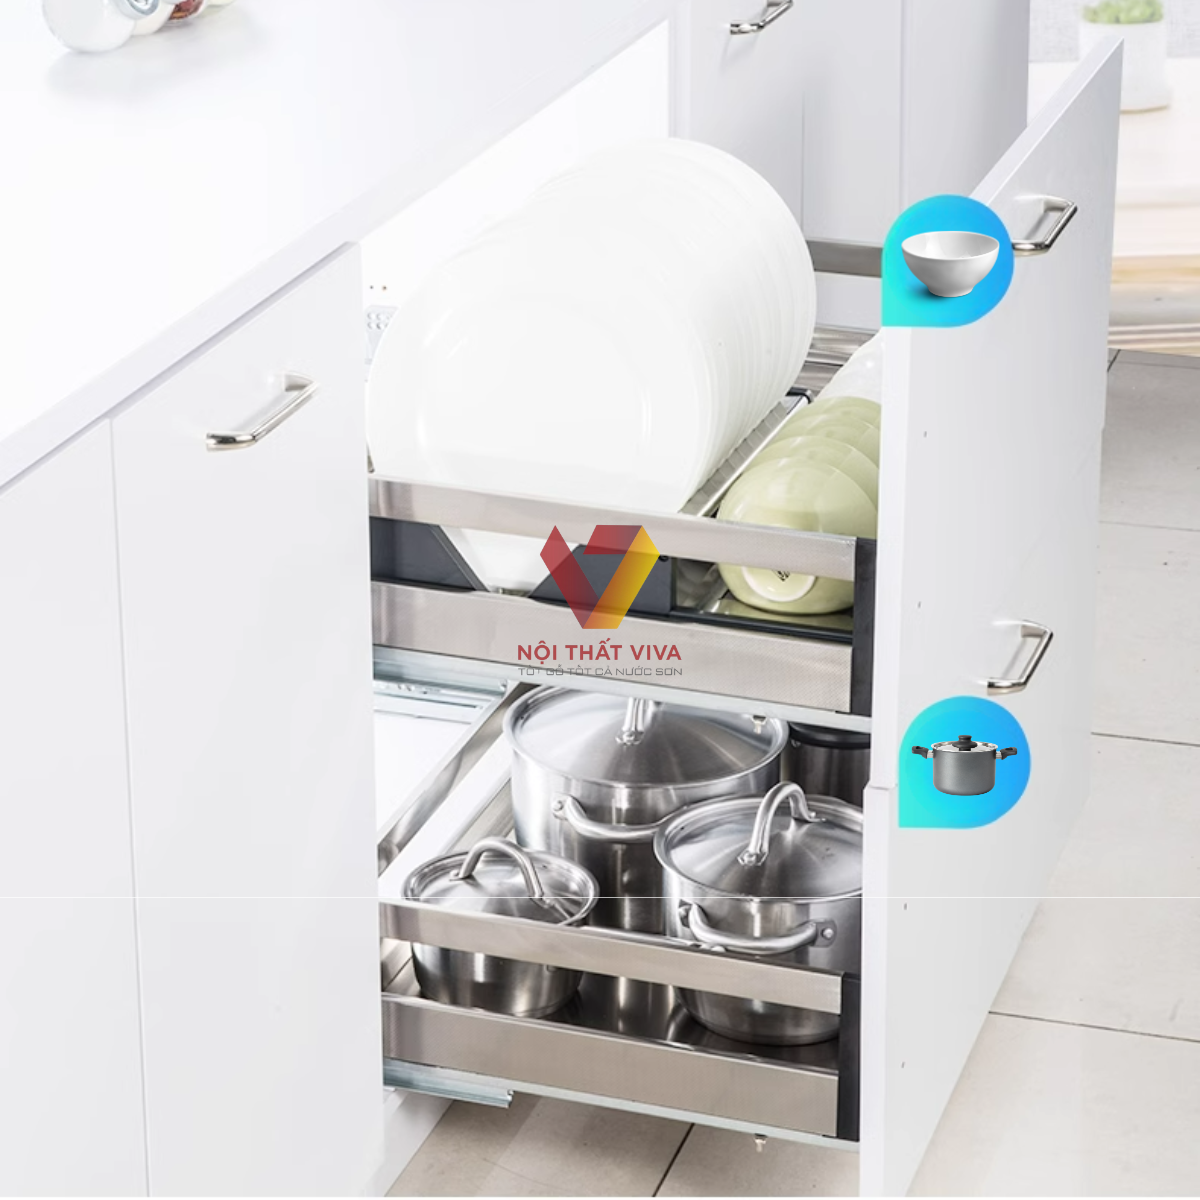 Tổng hợp cách lựa chọn kệ để xoong nồi trong tủ bếp phù hợp nhà bếp của bạn